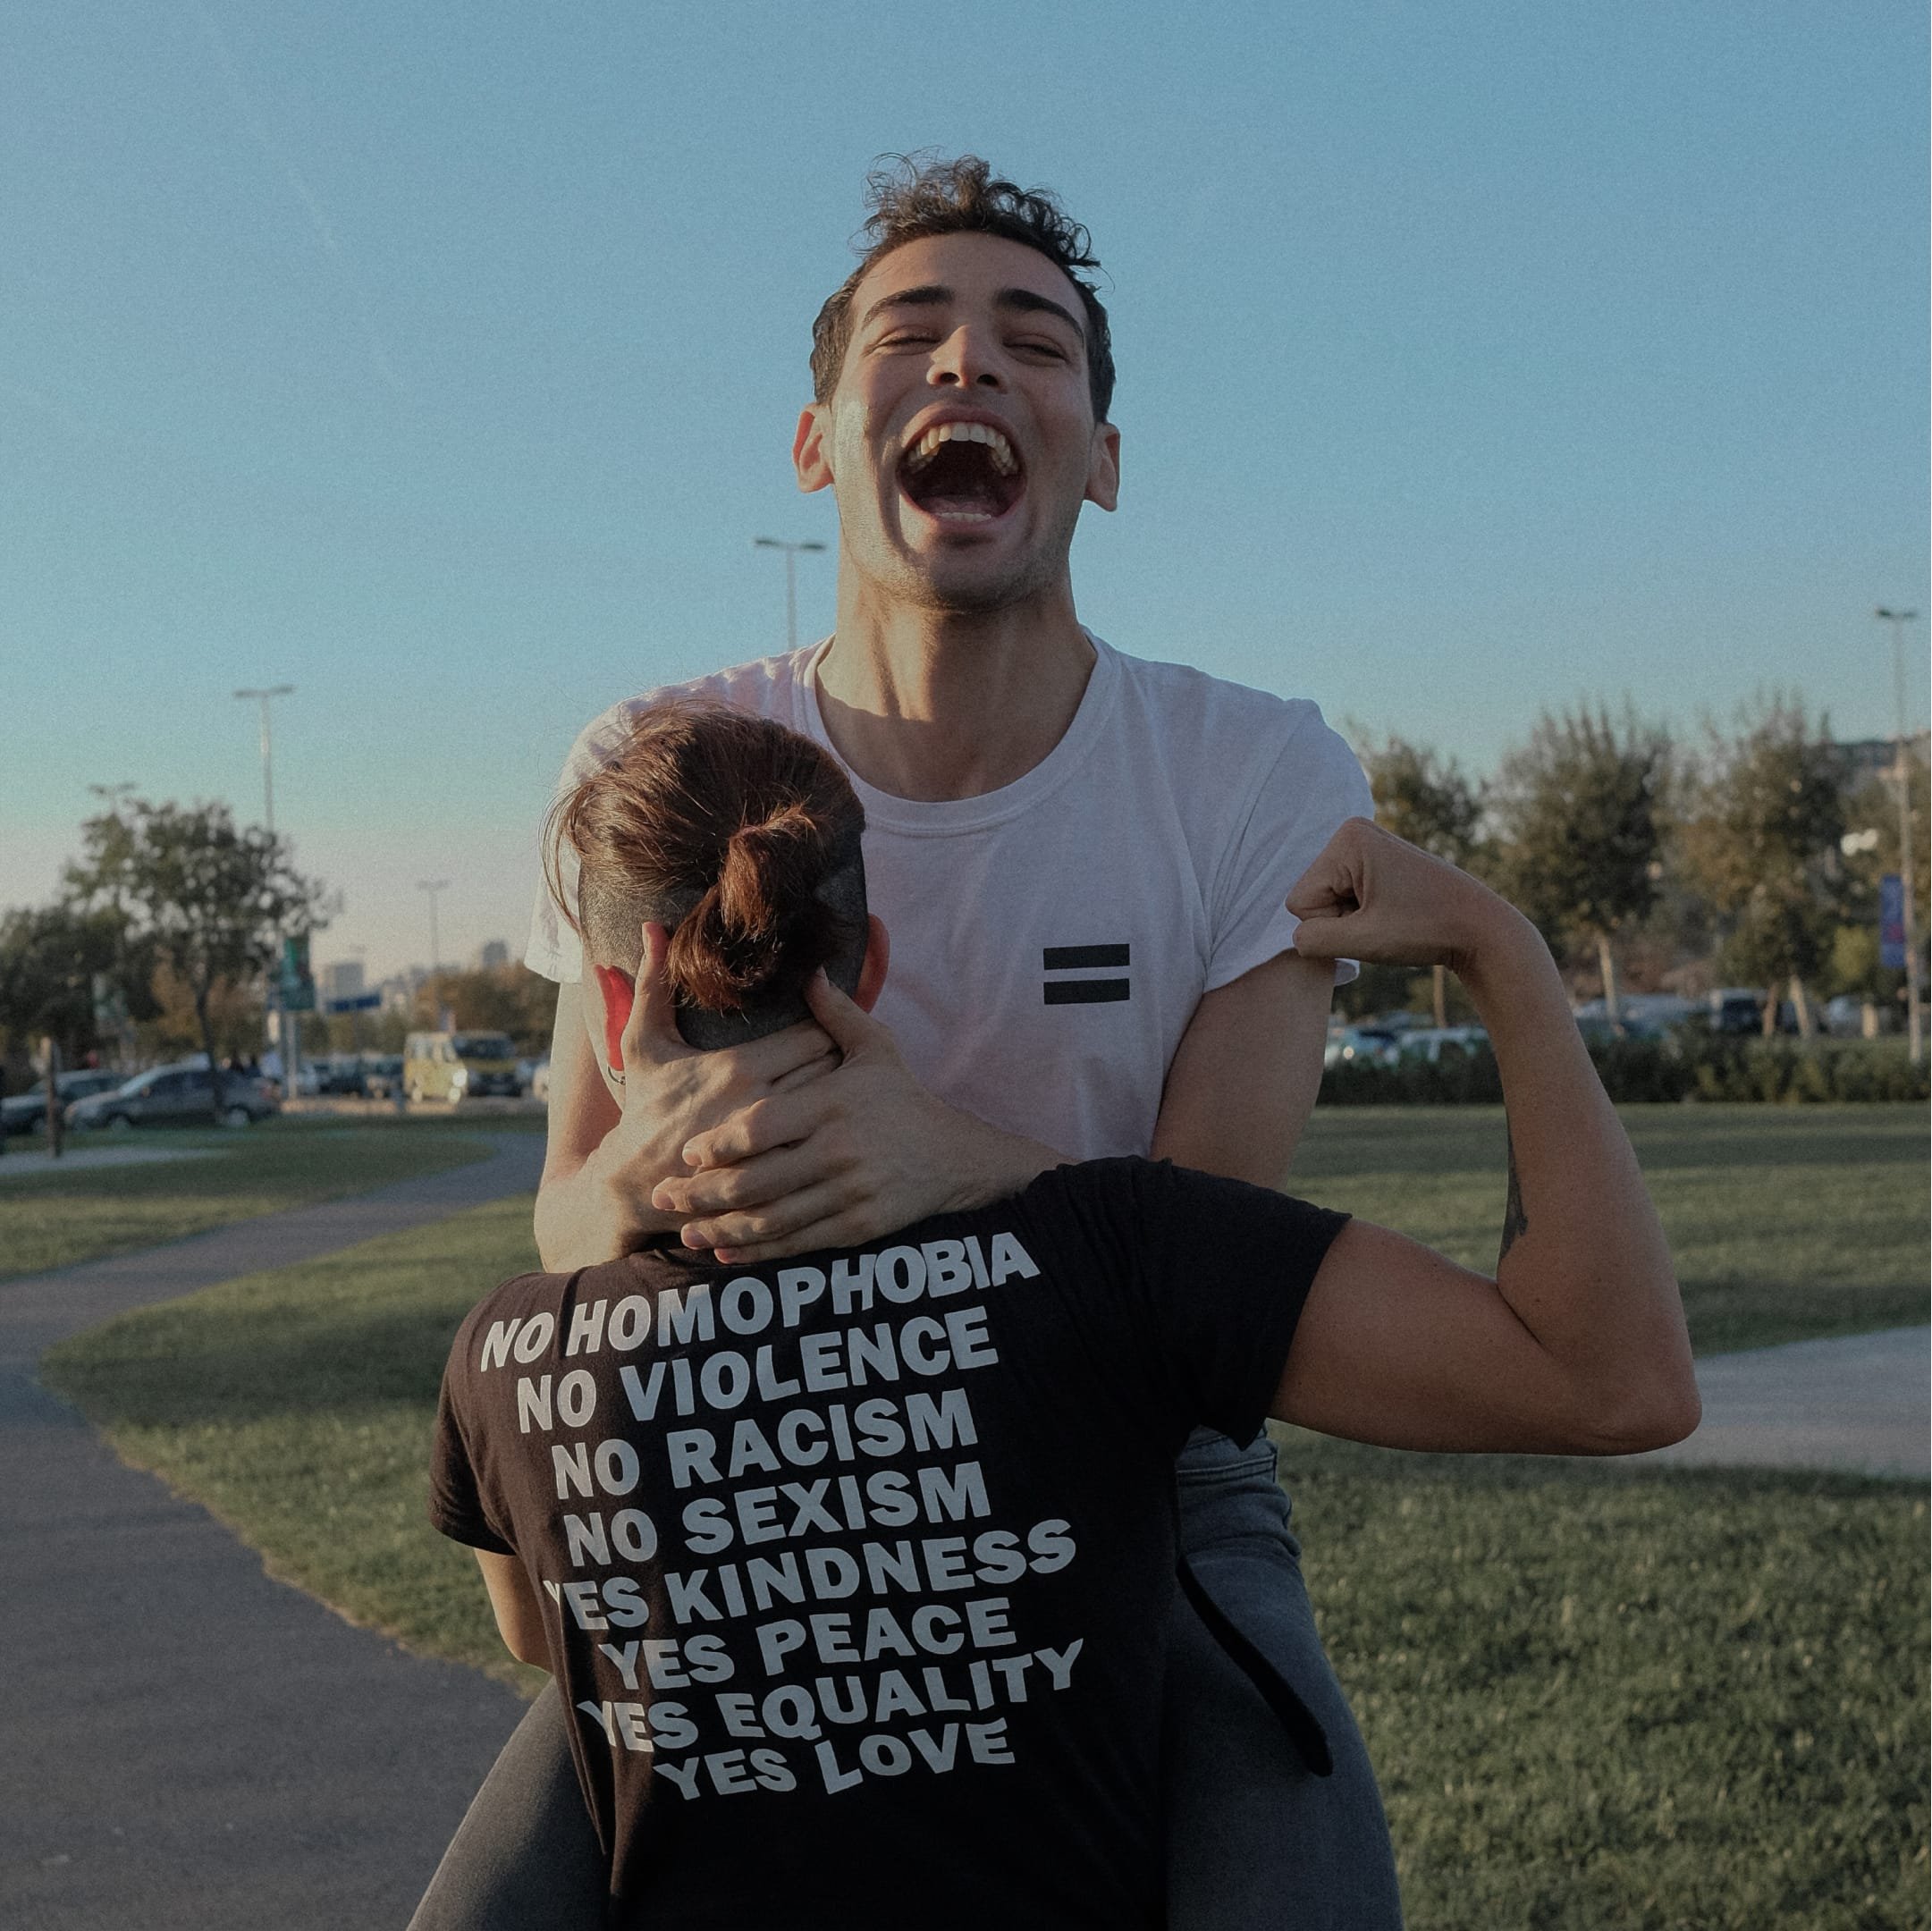 Надпись на футболке: «Нет гомофобии / нет насилию / нет расизму / нет сексизму / да доброте / да миру / да равноправию / да любви». Фото: Ece AK. Источник: pexels.com